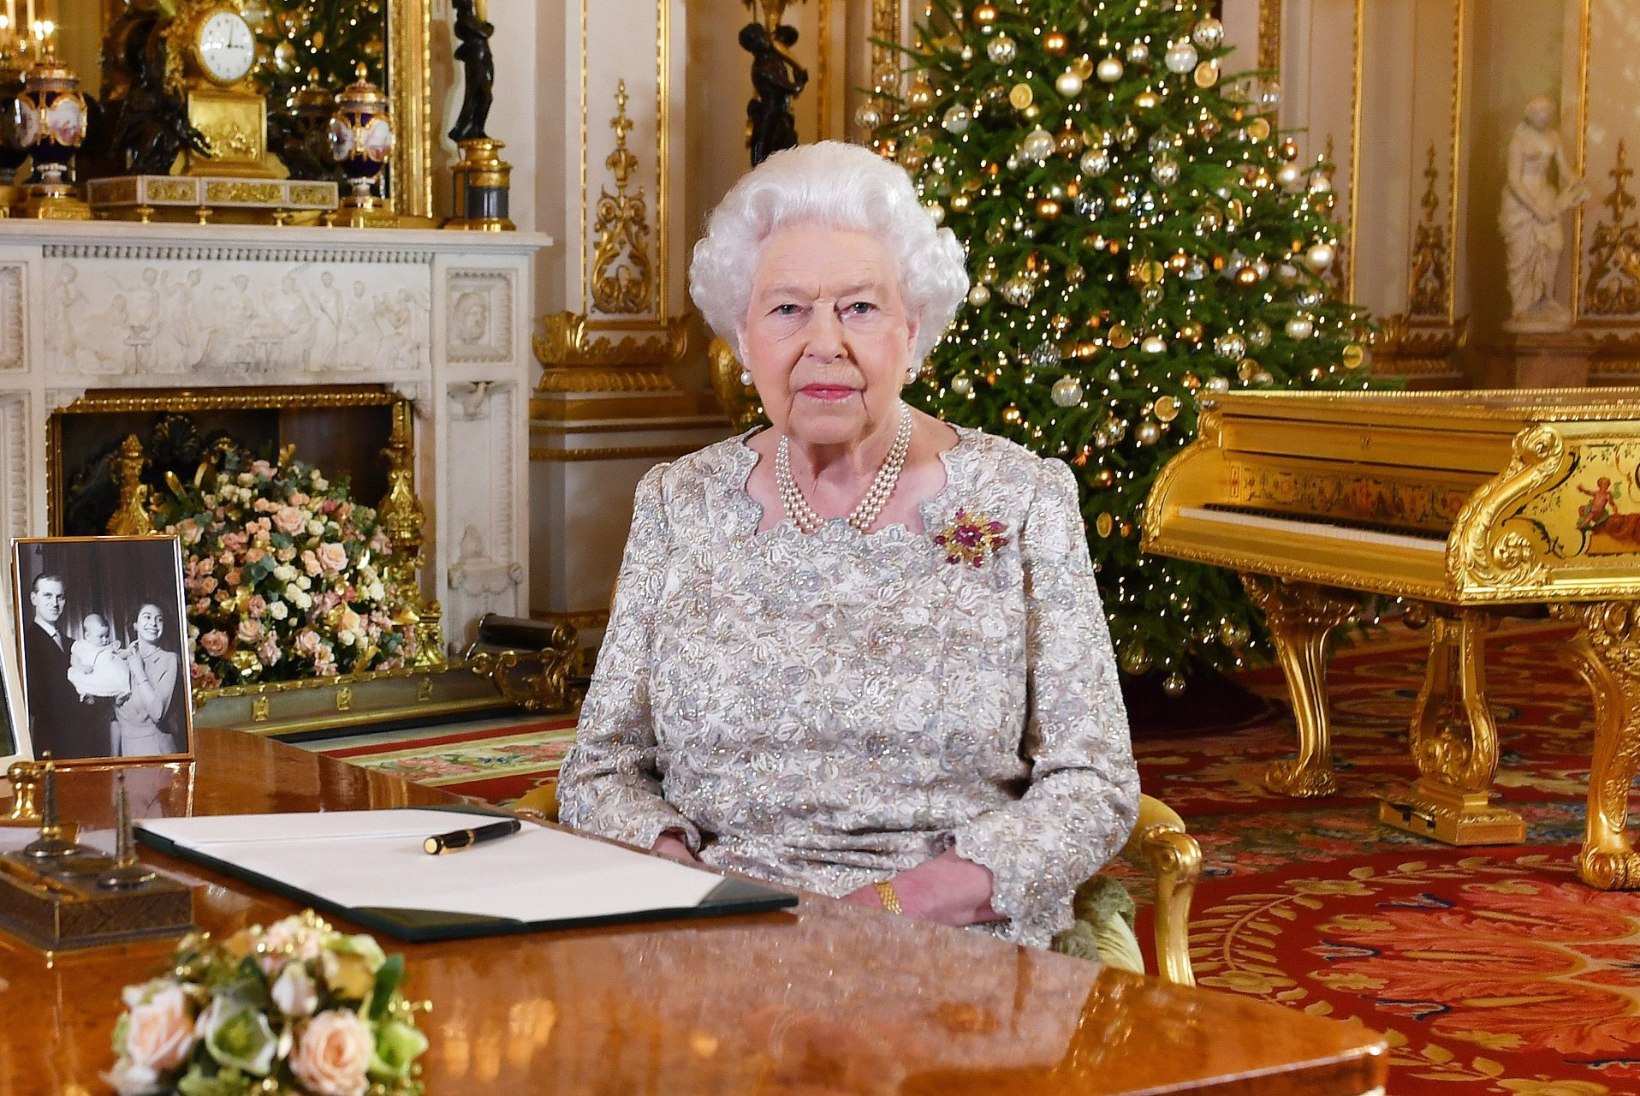 Kas teadsid, et Elizabeth II kasutab meigikunstnikku vaid korra aastas?